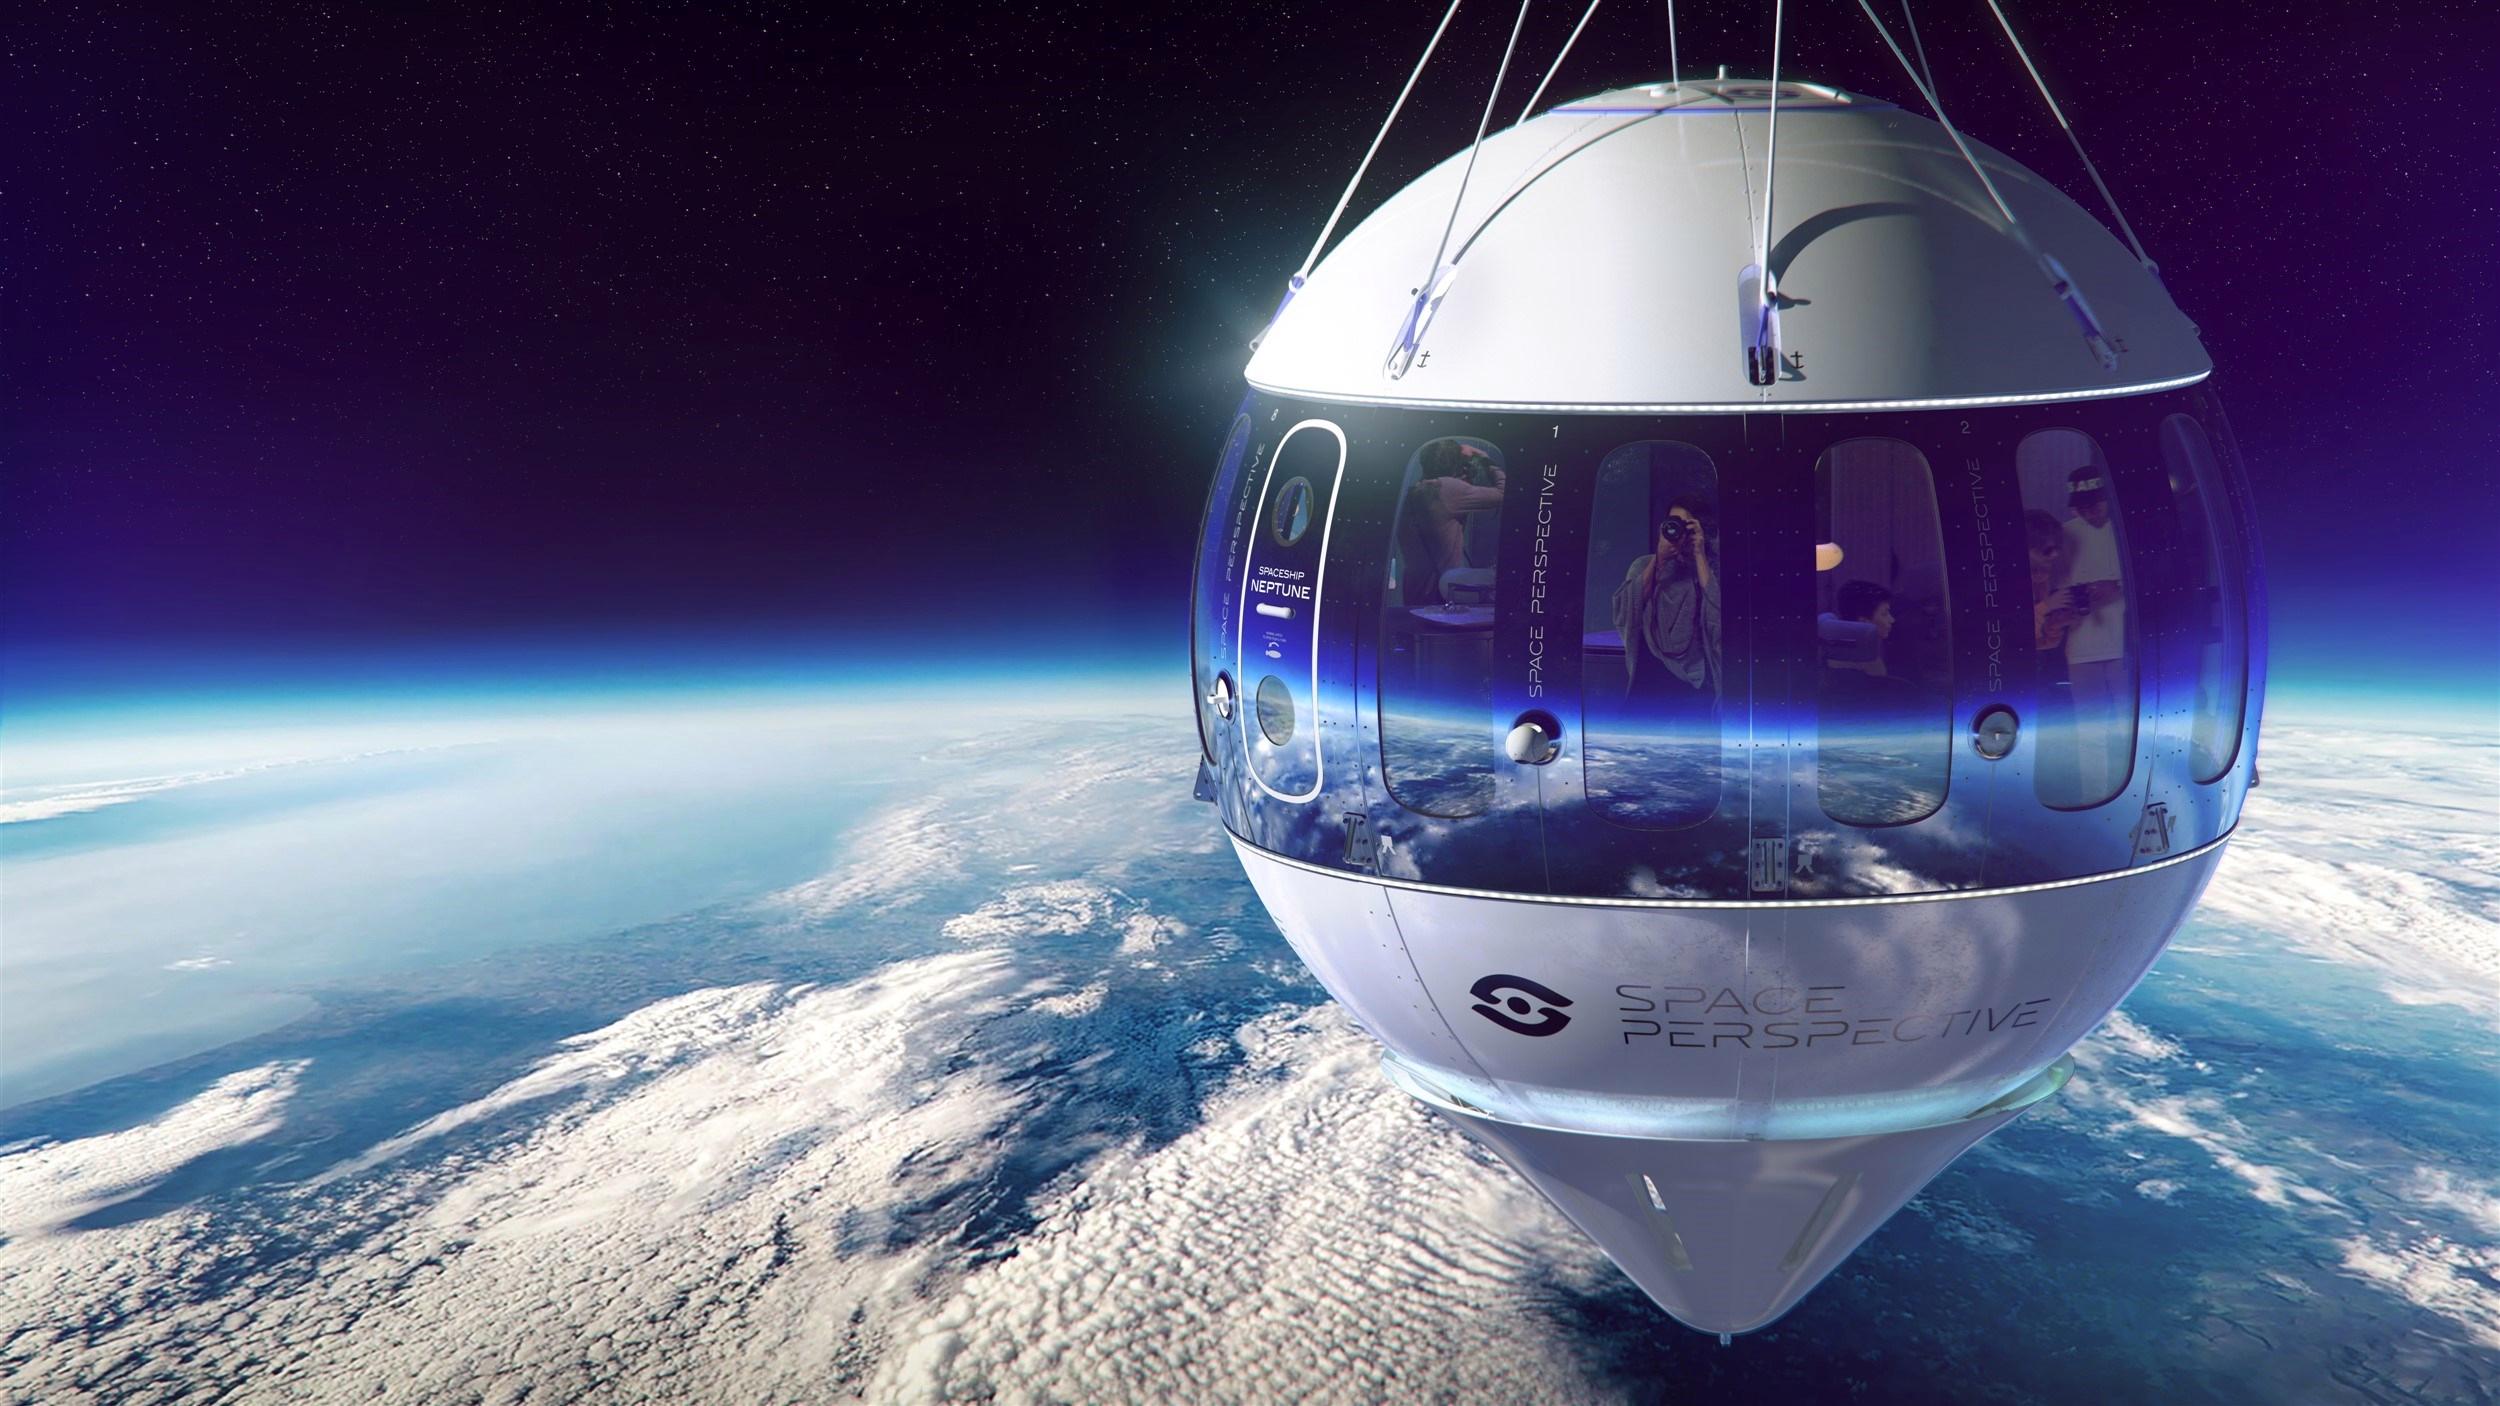 Kişi başı 125 bin dolar: Turistlerin kullanacağı uzay kapsülü tanıtıldı